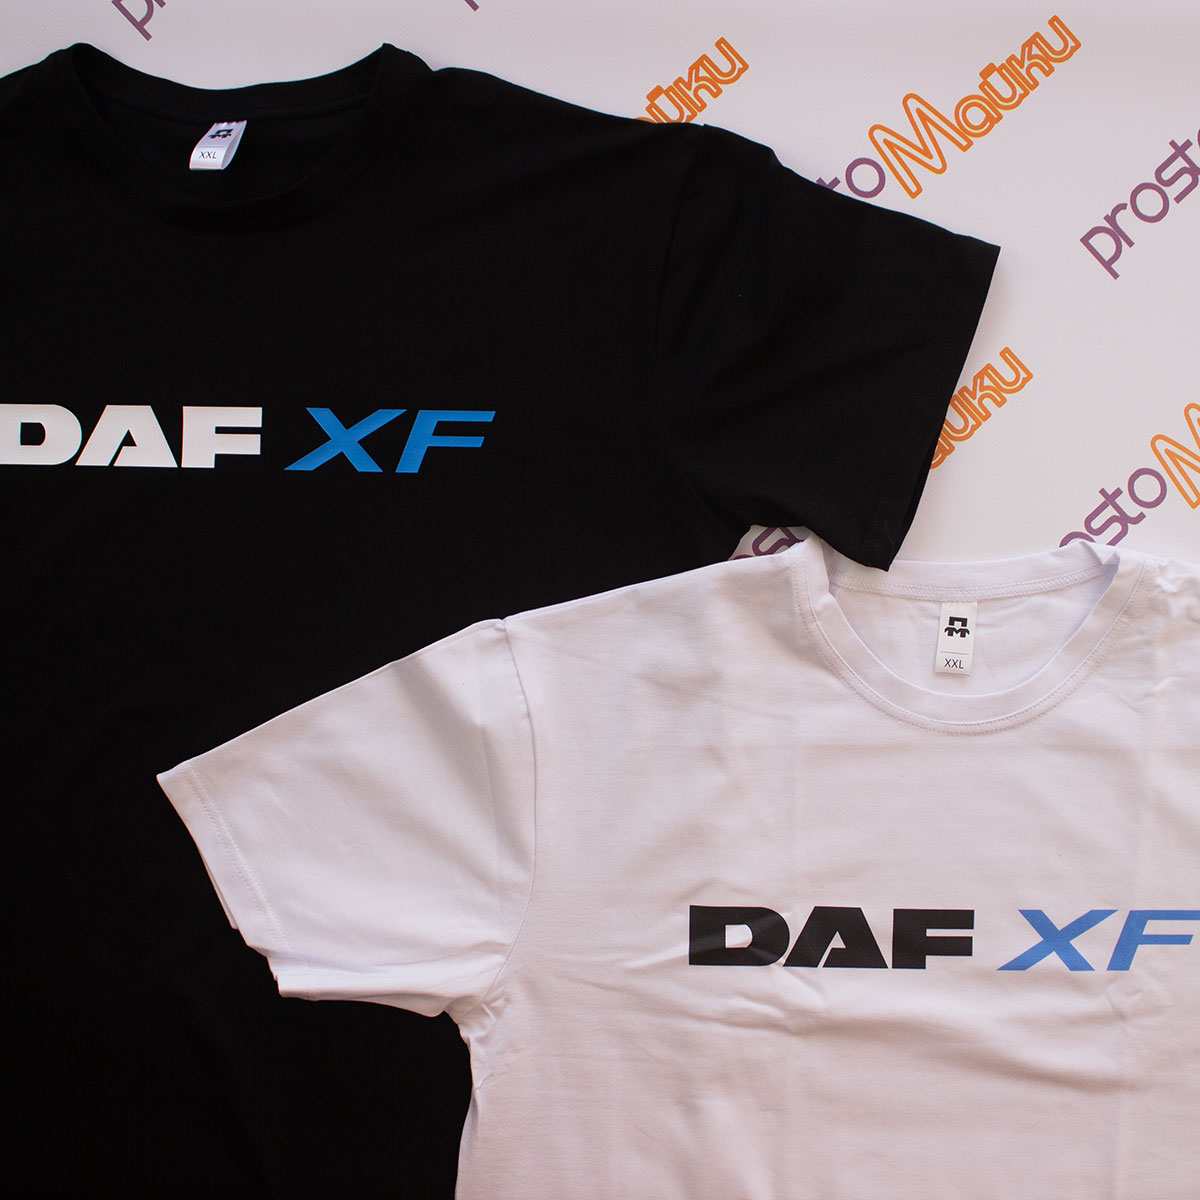 Детская футболка DAF XF (2)